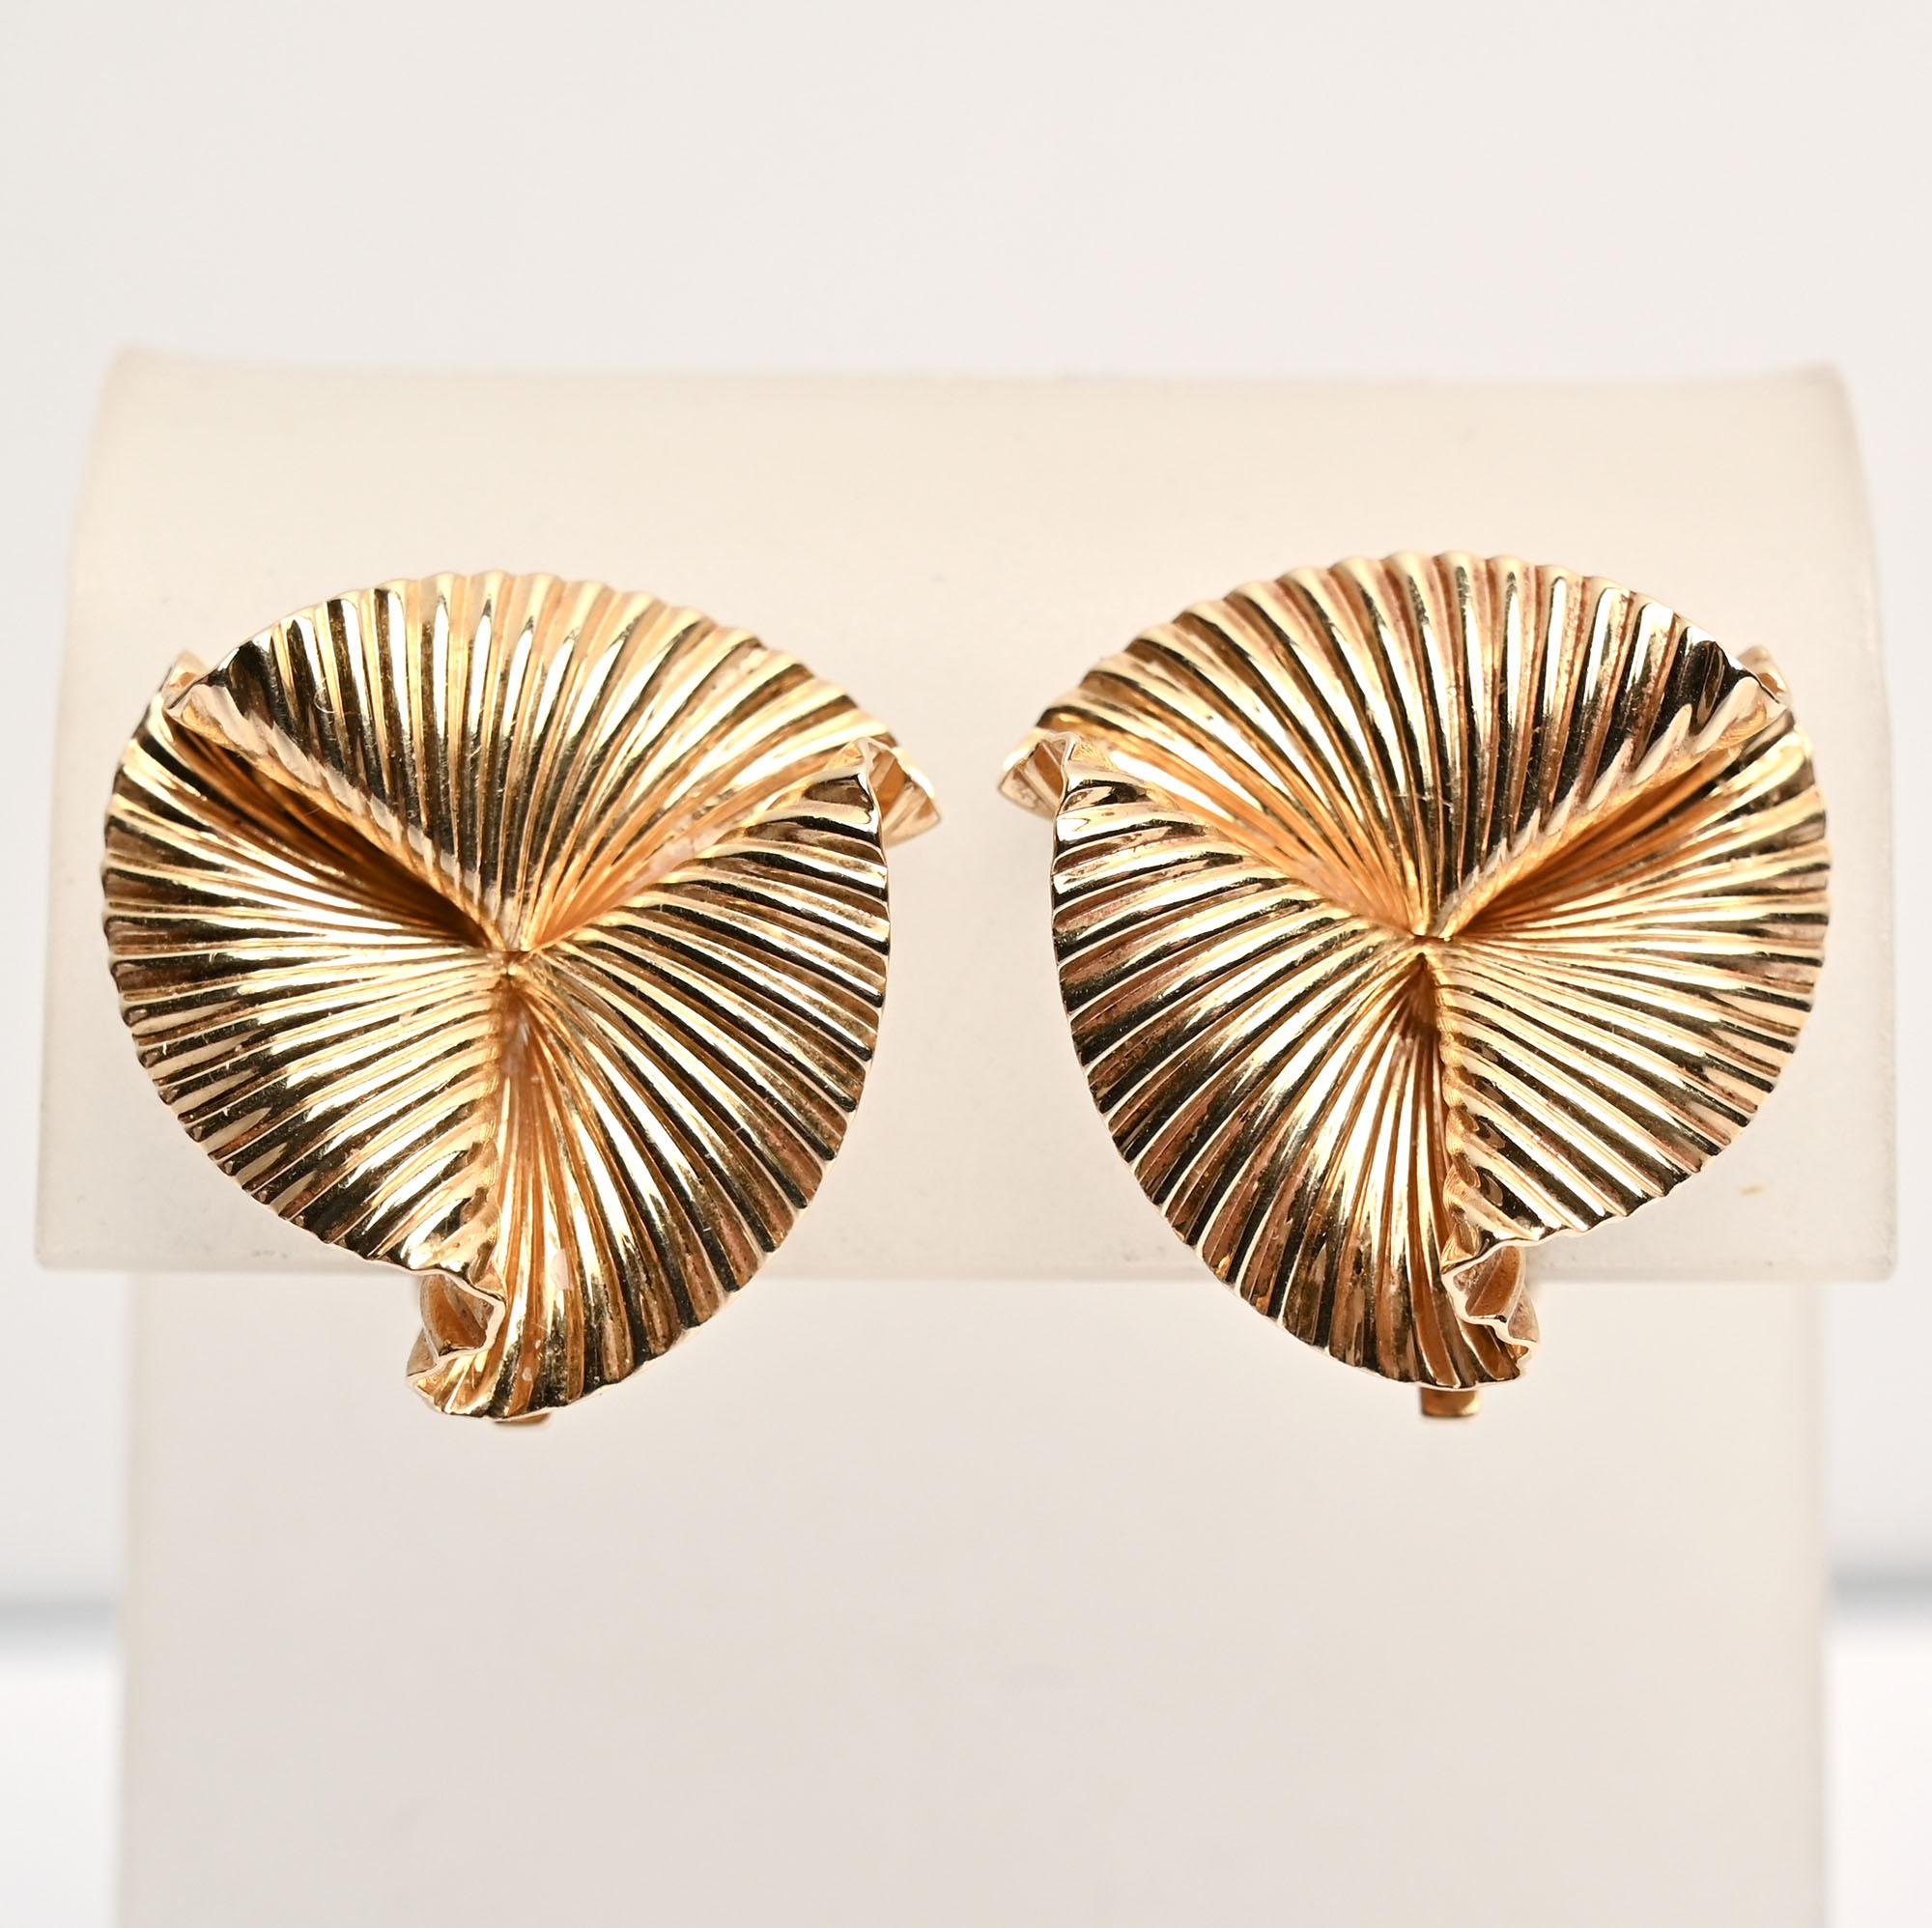 Diese klassischen Ohrringe im Tiffany-Design sind die Gegenstücke zur Brosche, die als Artikel LU13321851832 aufgeführt ist. Sie bestehen aus drei wellenförmigen, sich überlappenden  florale Lappen mit einem gestreiften Muster. Die Ohrringe haben